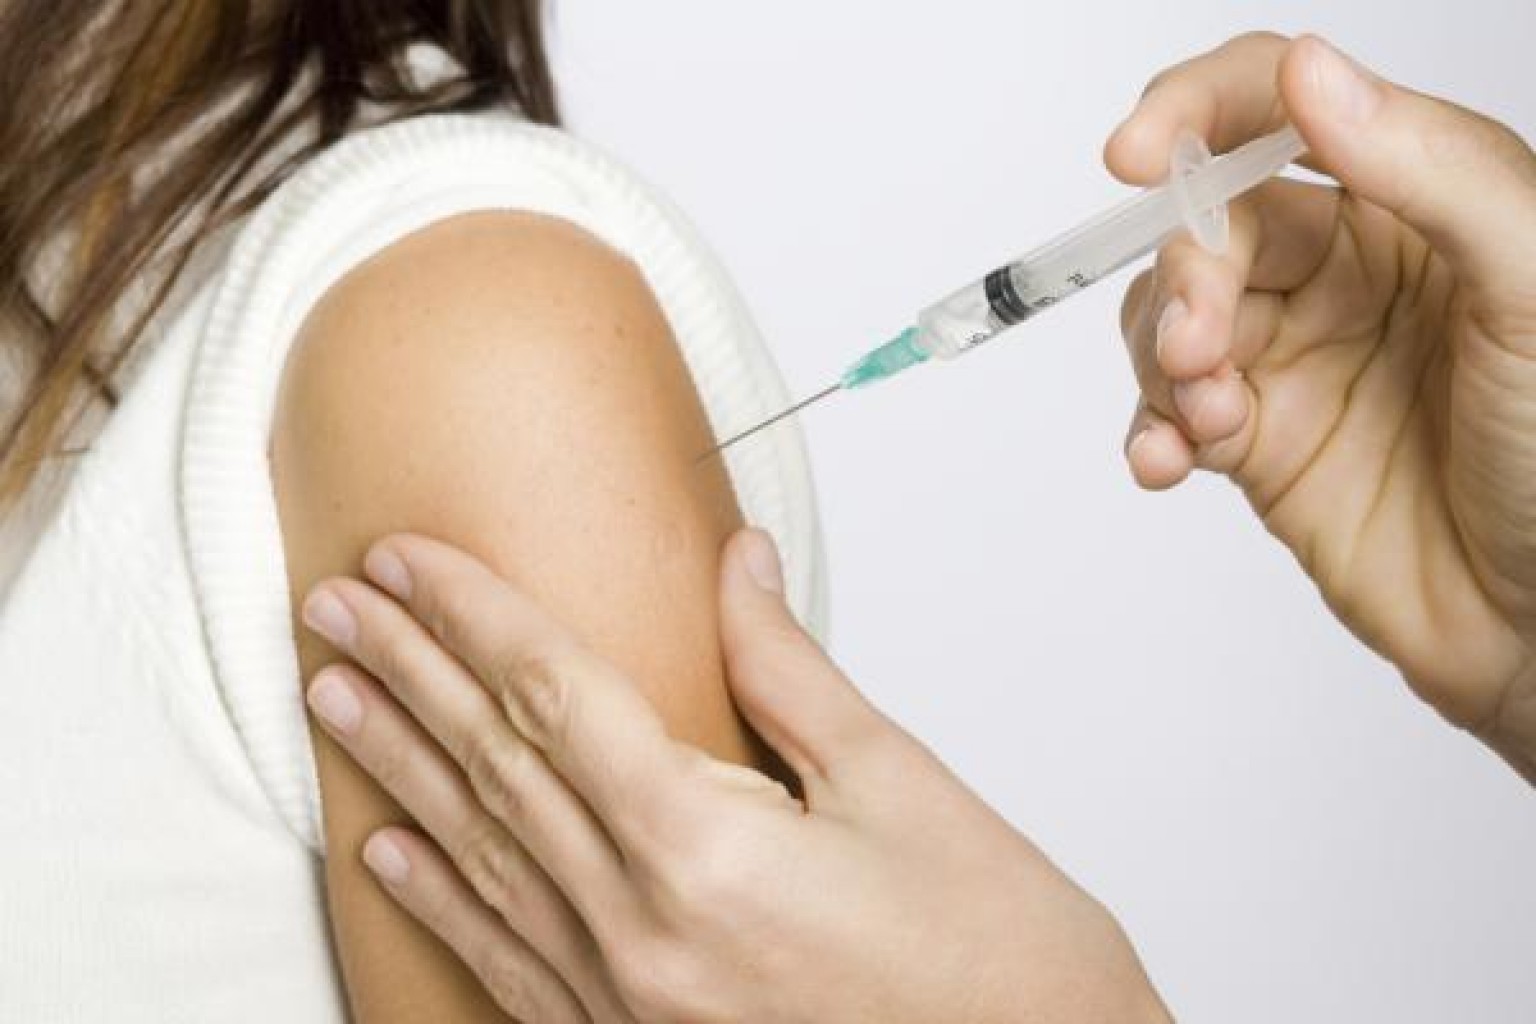 ¡ATENCIÓN MUJERES! Concientización a mujeres sobre la vacuna contra el HPV 